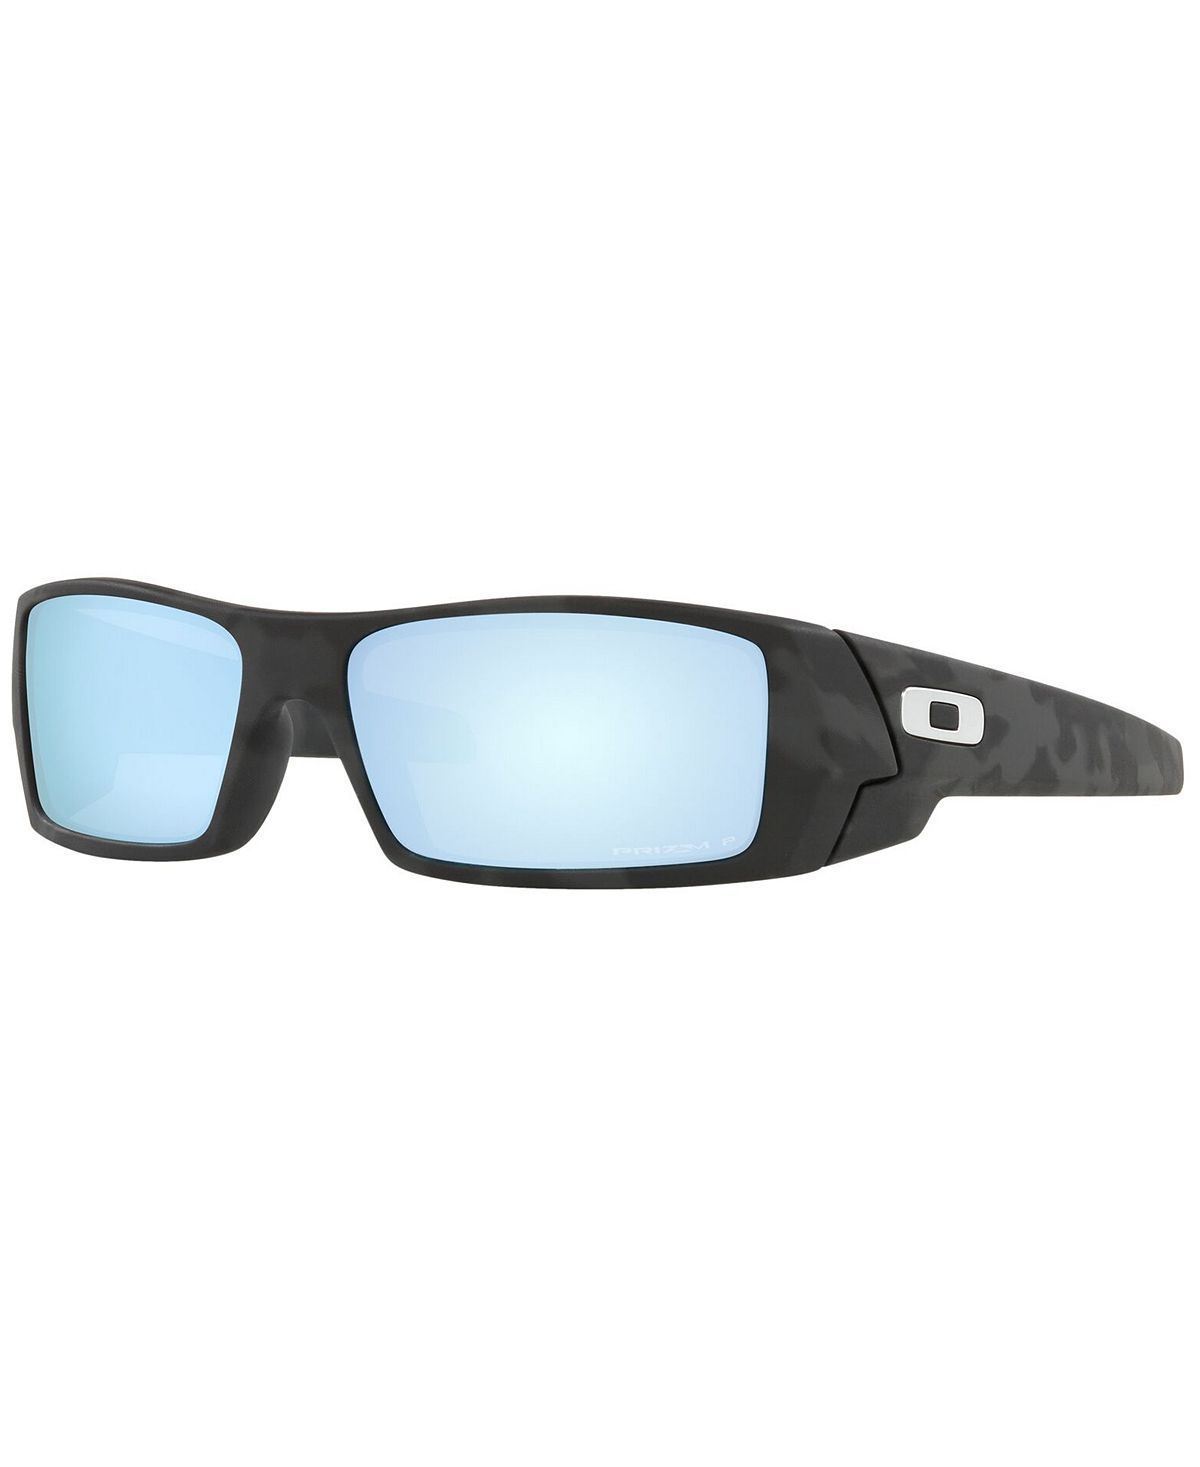 Мужские поляризованные солнцезащитные очки Gascan, OO9014 60 Oakley